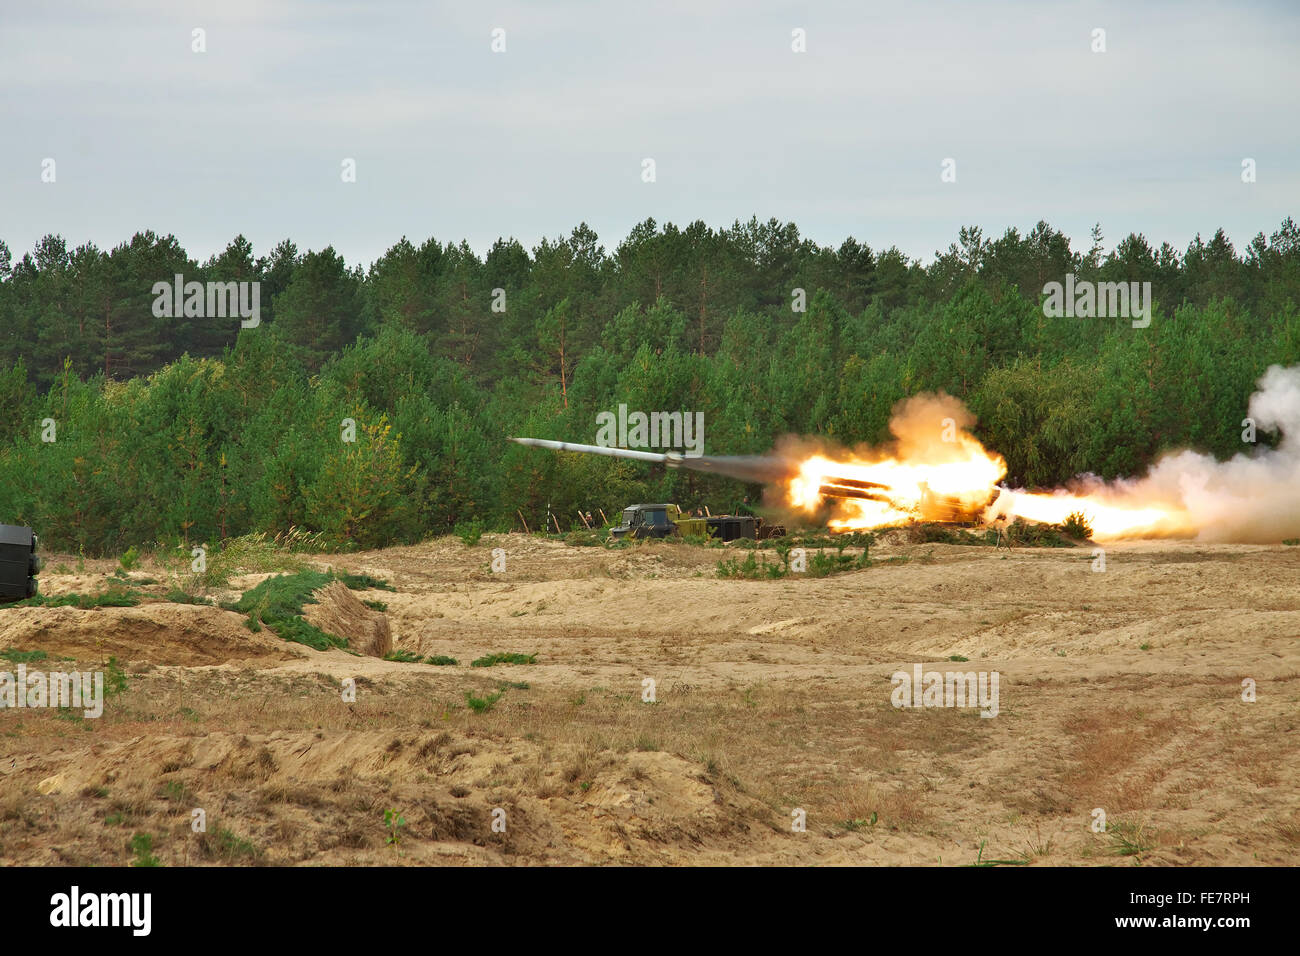 Chernigov Region, Ukraine - September 16, 2010: BM-27 Uragan missile launcher firing during military trainings Stock Photo